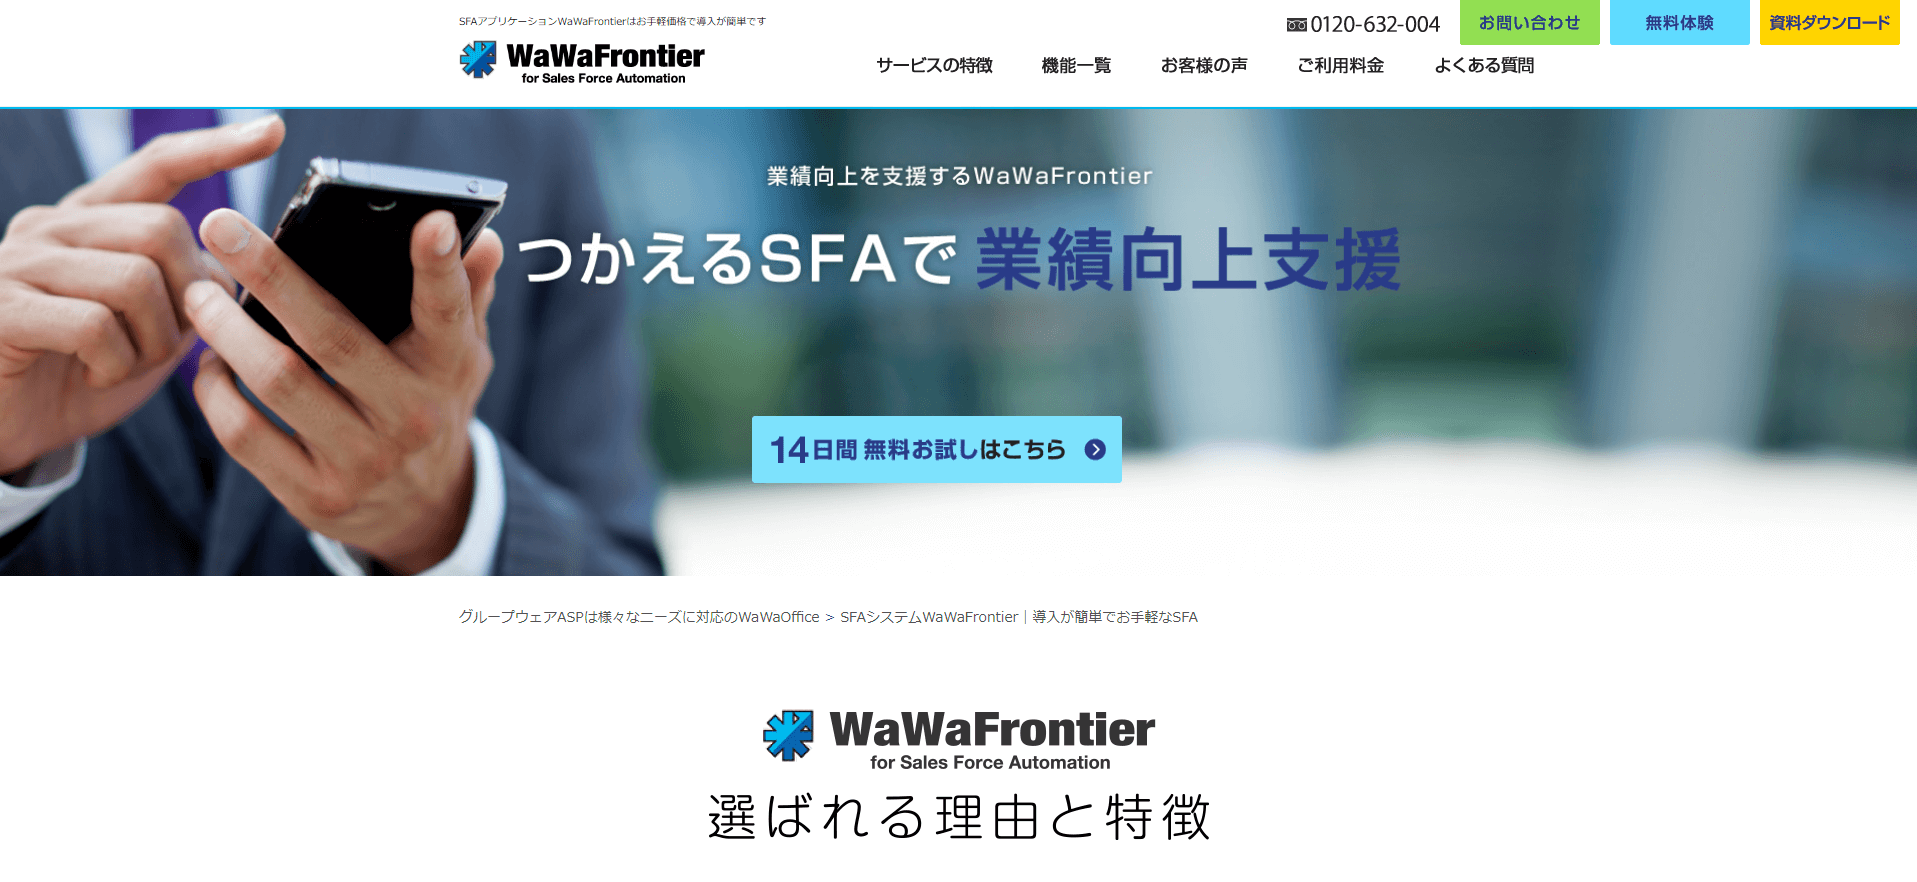 WaWaFrontier